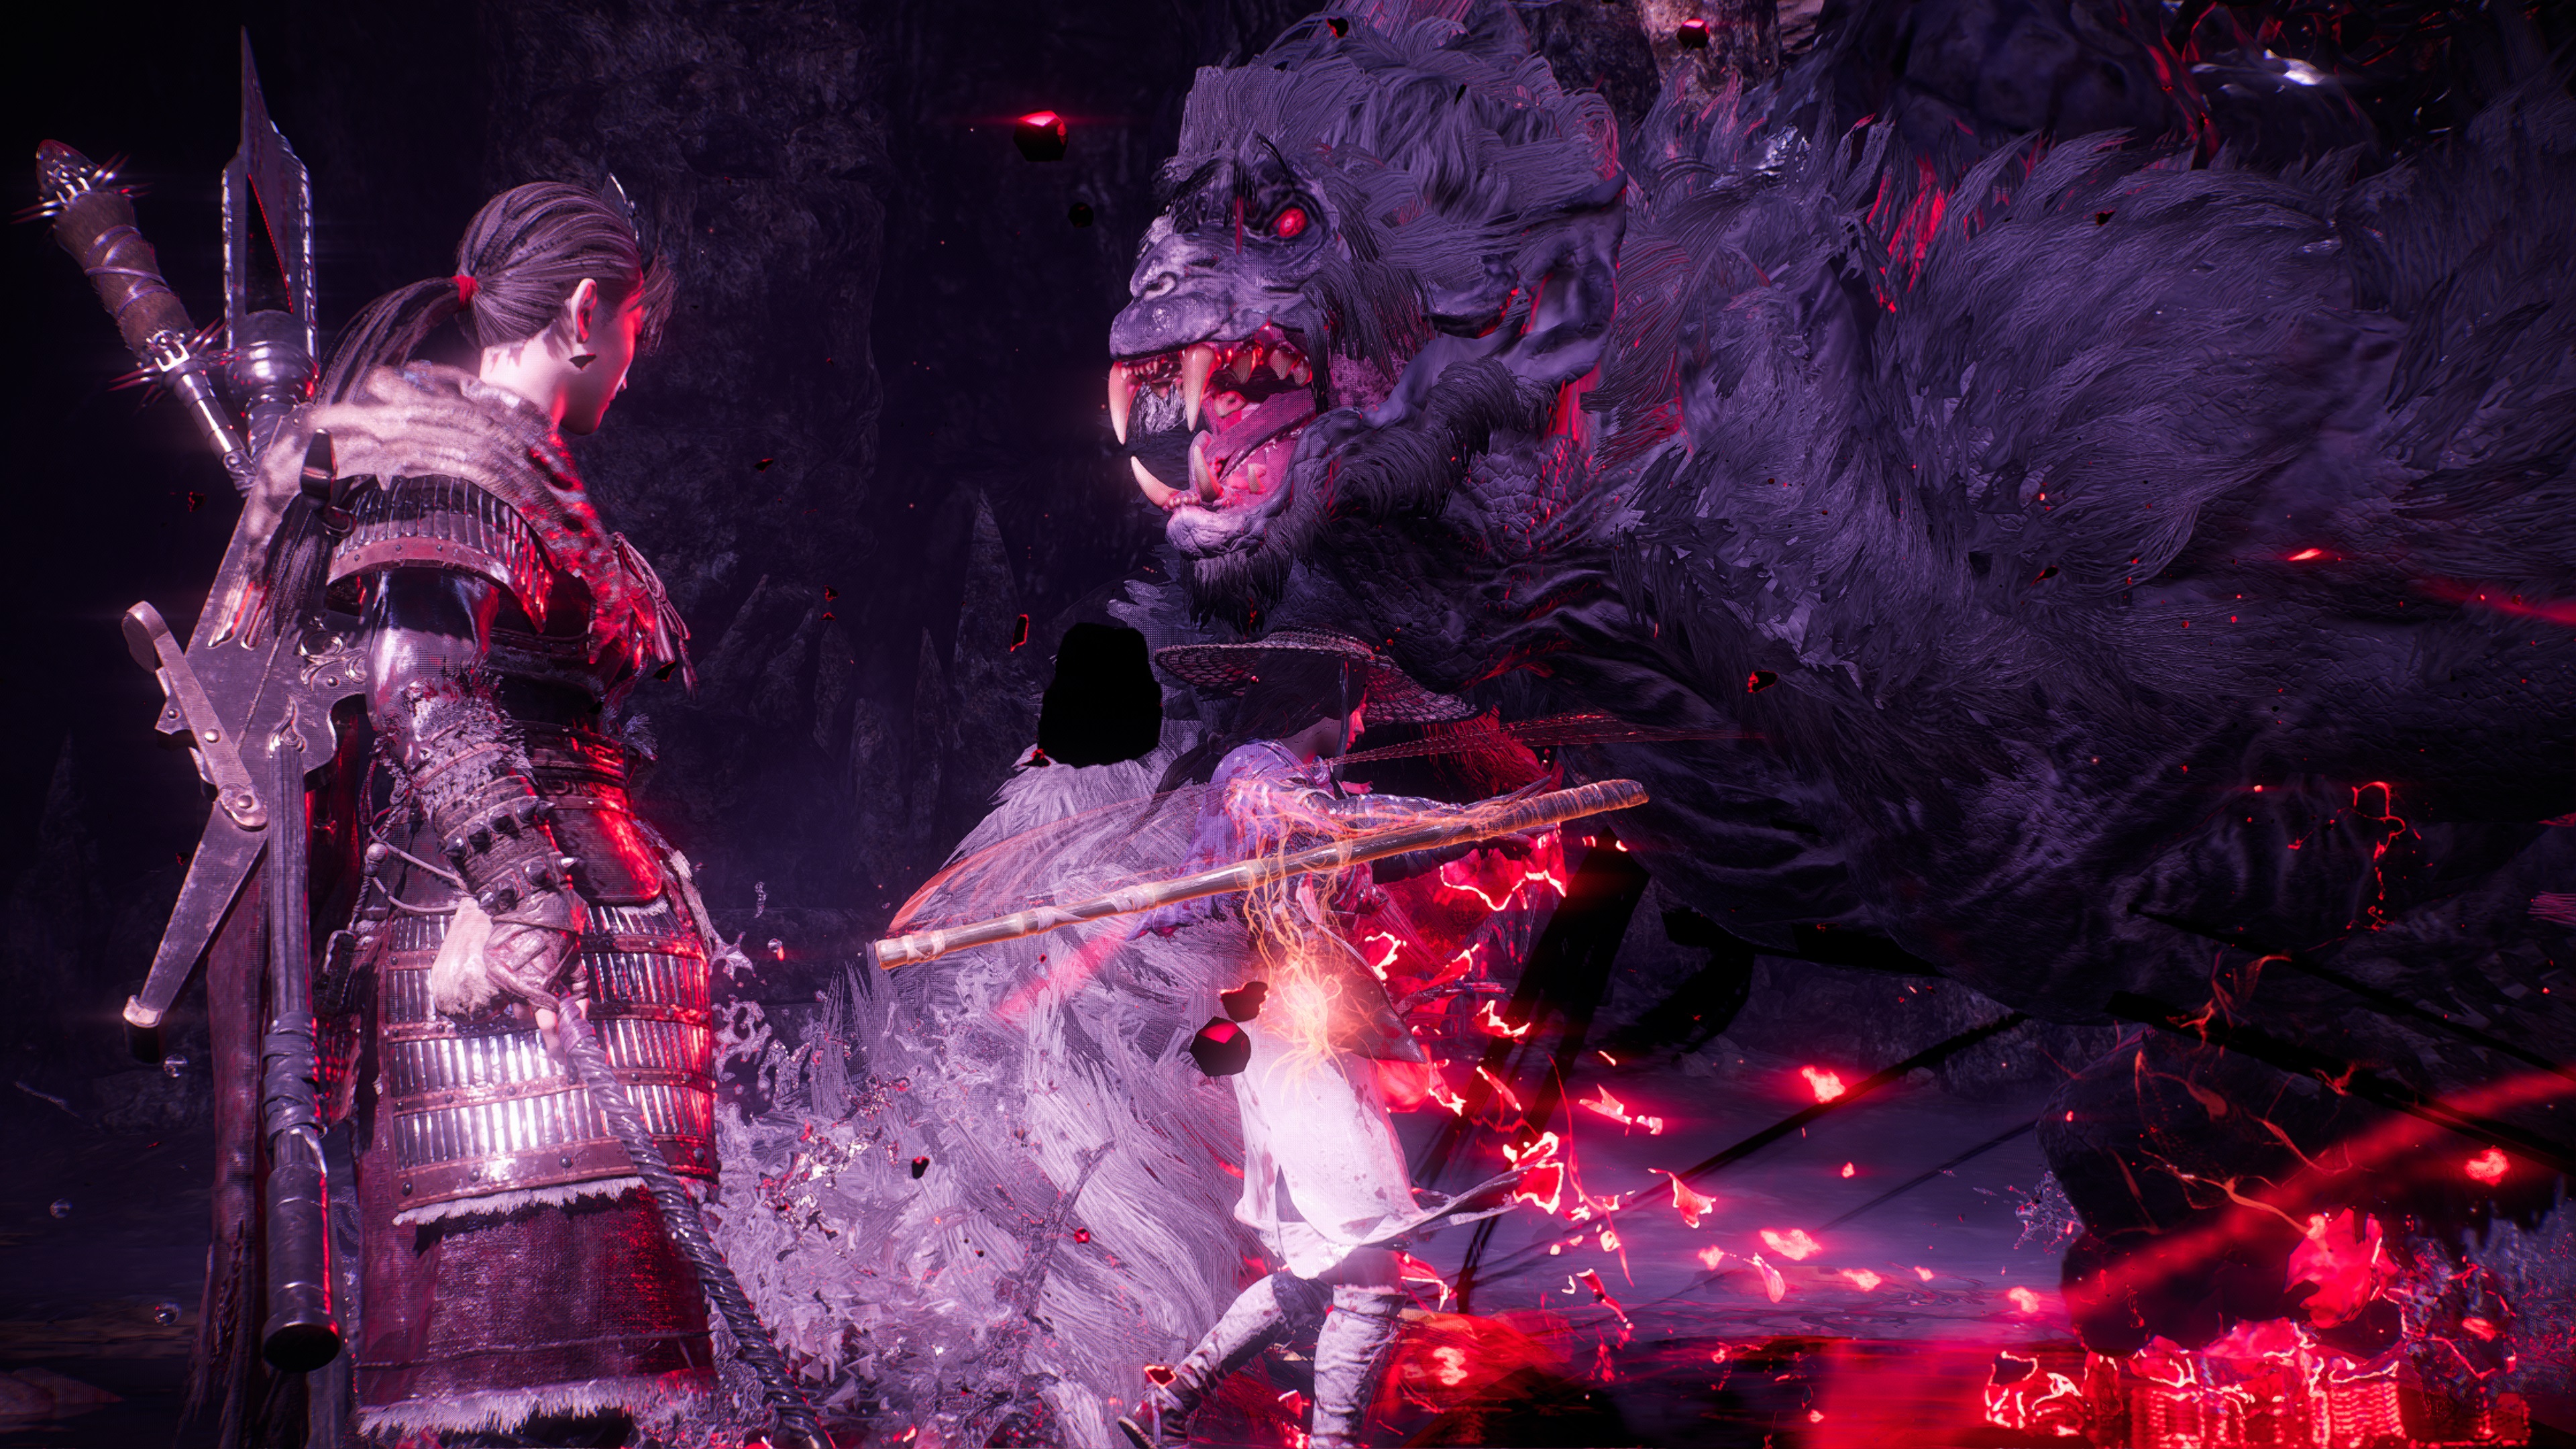 Внутриигровой скриншот Wo Long: Fallen Dynasty, на котором игрок стоит лицом к боссу, сделанный в режиме «Фото».